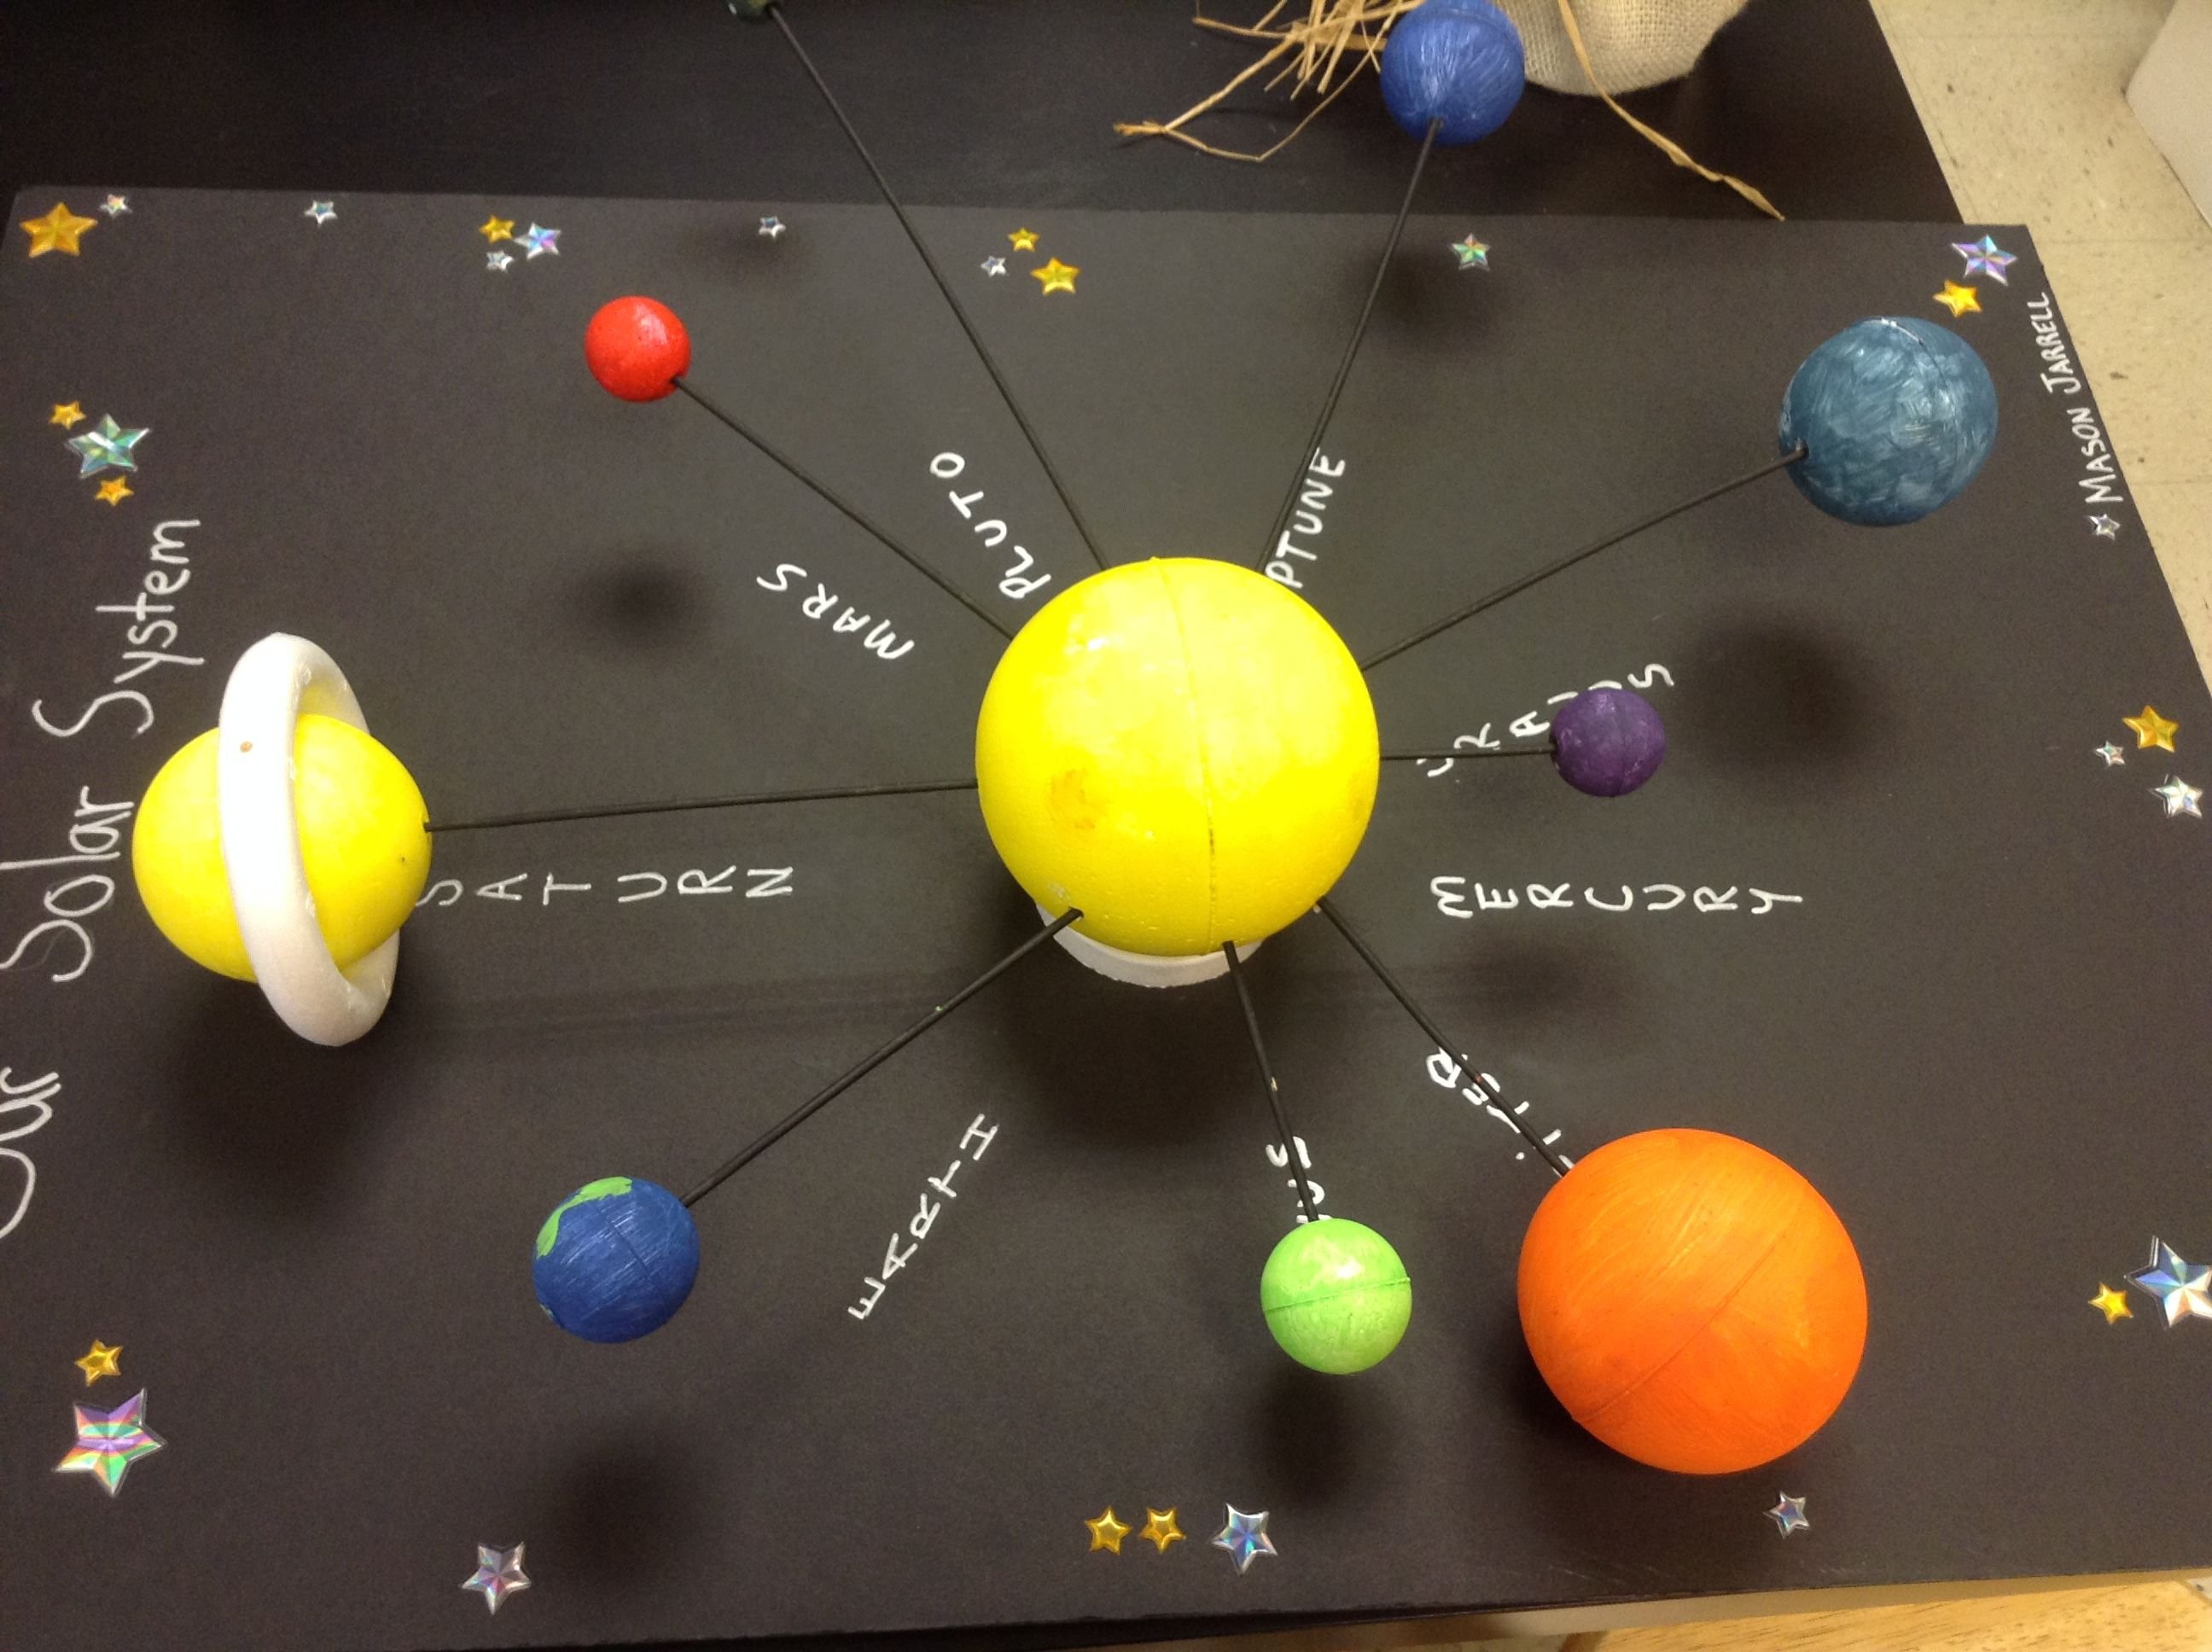 Окружающий мир 1 класс звезды из пластилина. Модель "Солнечная система" (Планетная система; механическая). Вылепить модель солнечной системы (солнце и планеты). Планеты солнечной системы макет из пластилина. Планеты солнечной системы из пенопластовых шаров.